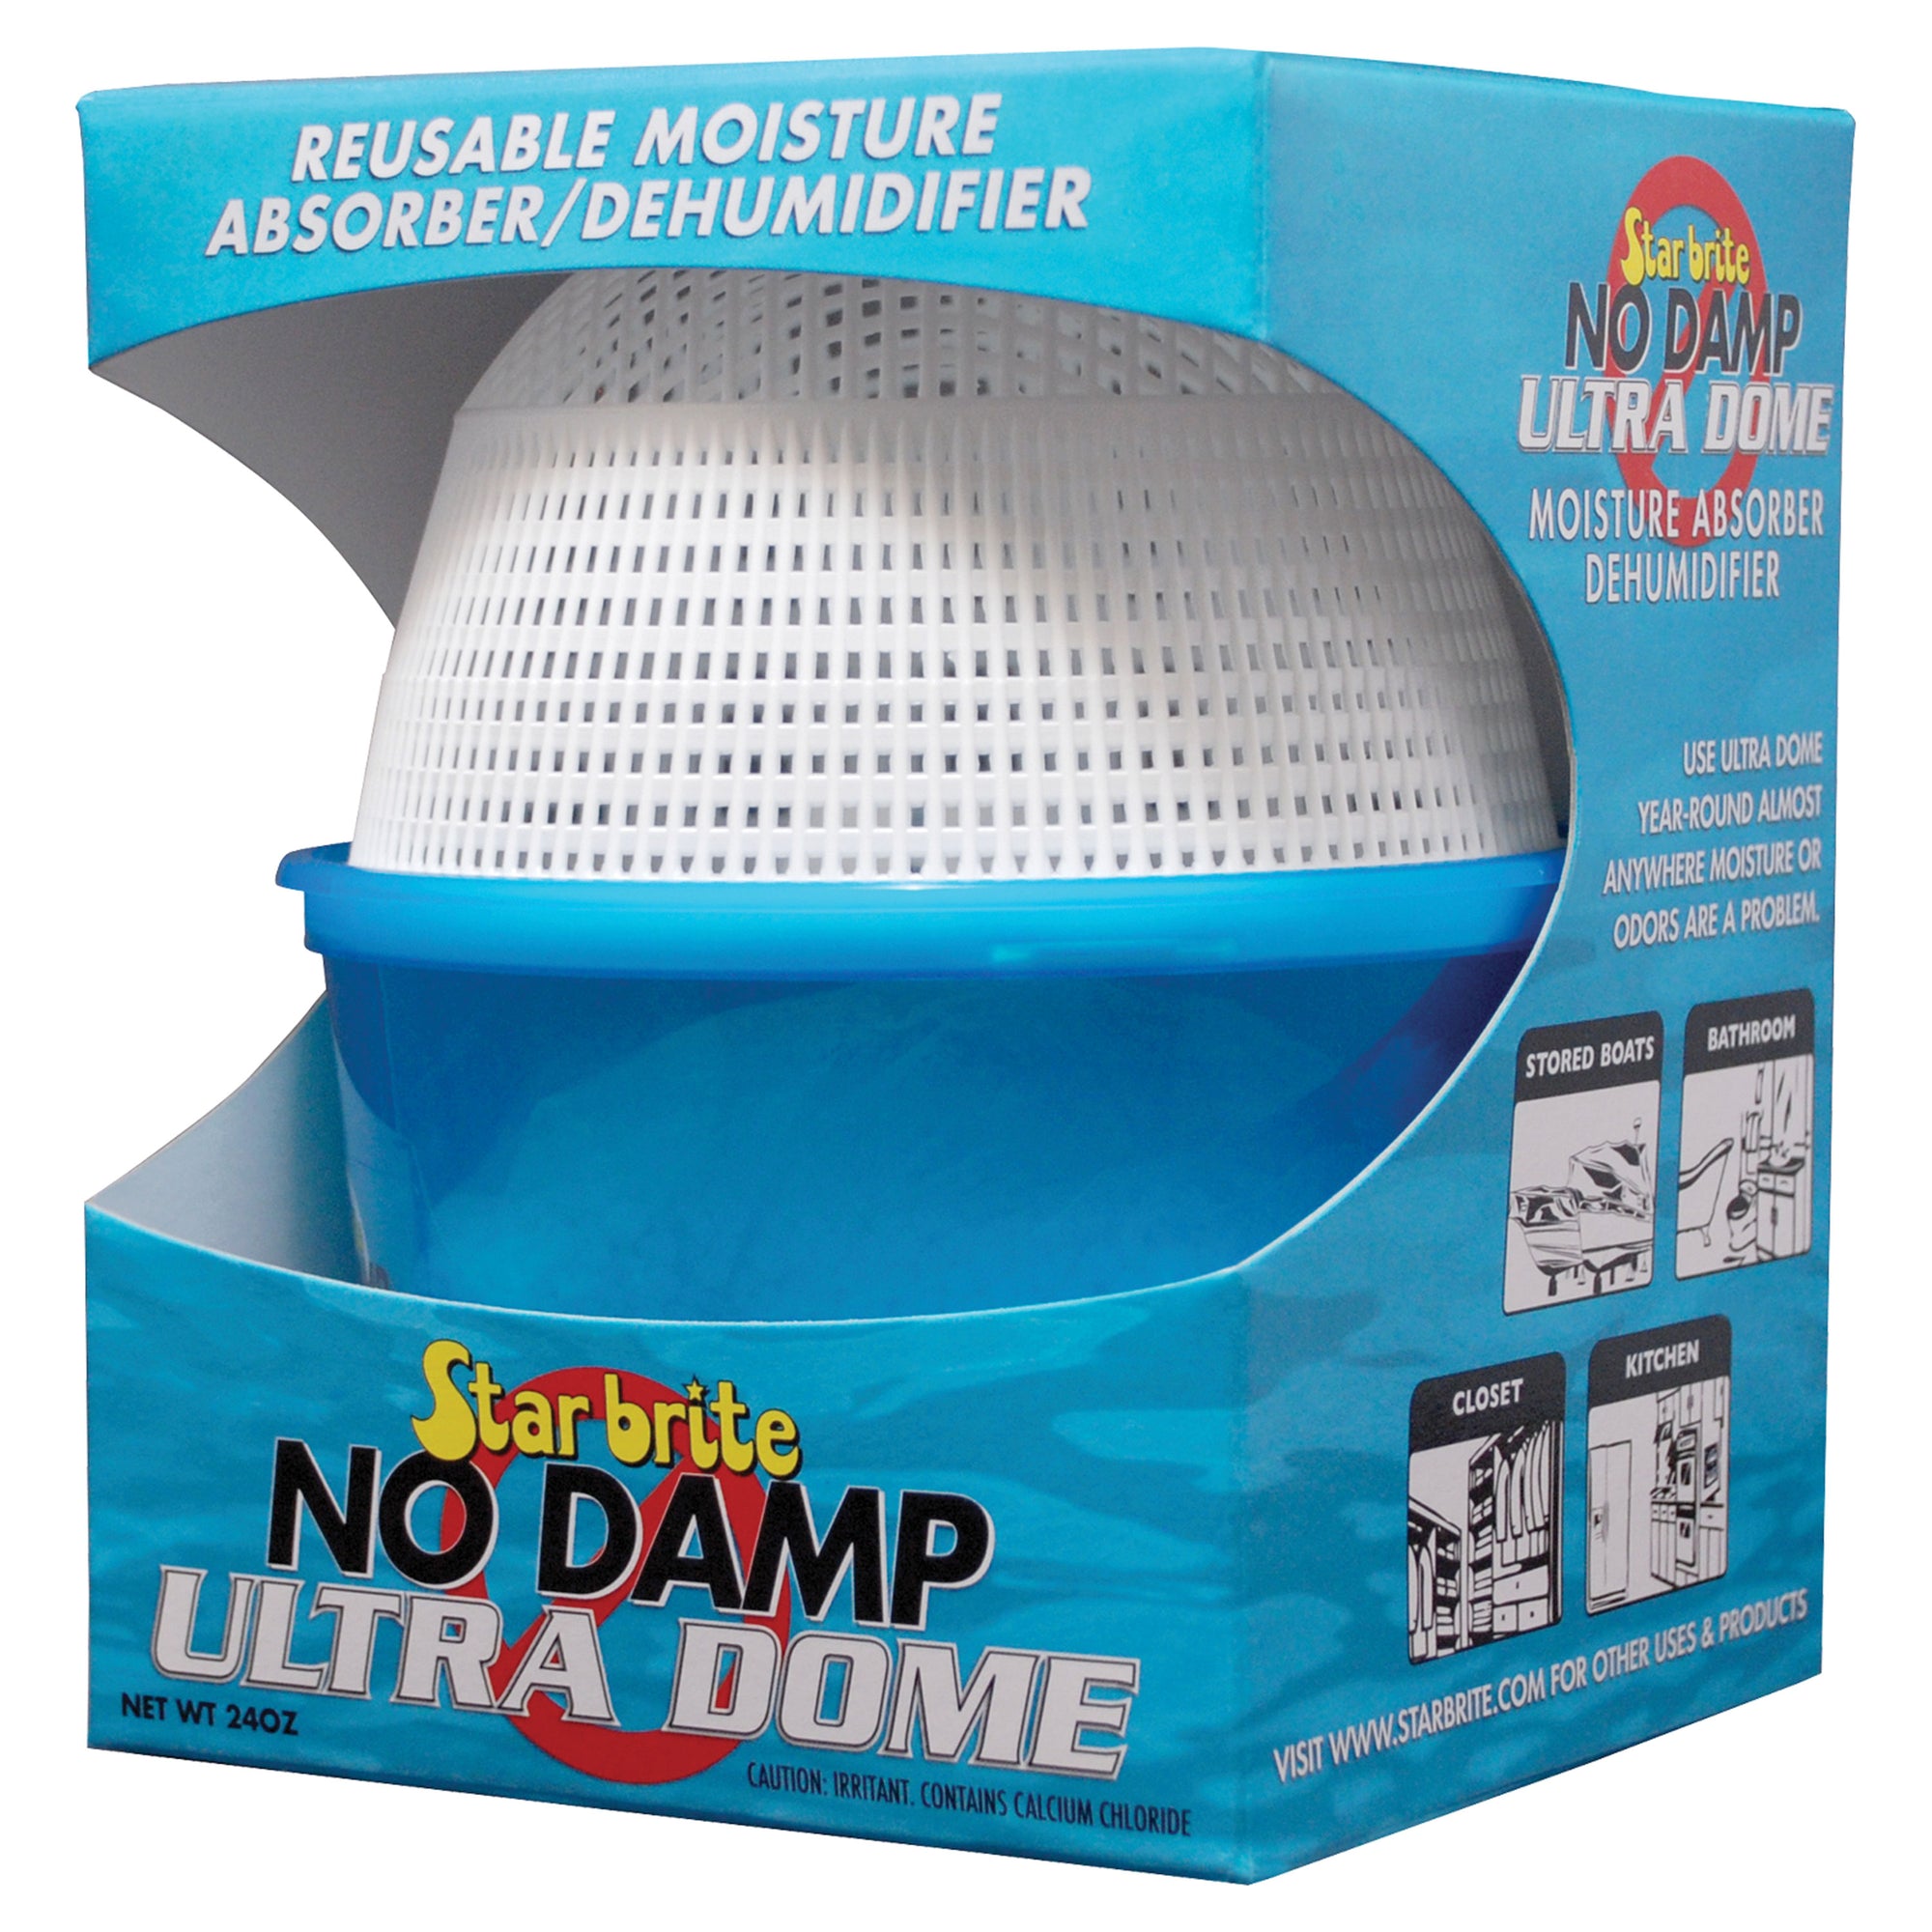 Star brite 85460 No Damp Ultra Dome Dehumidifier